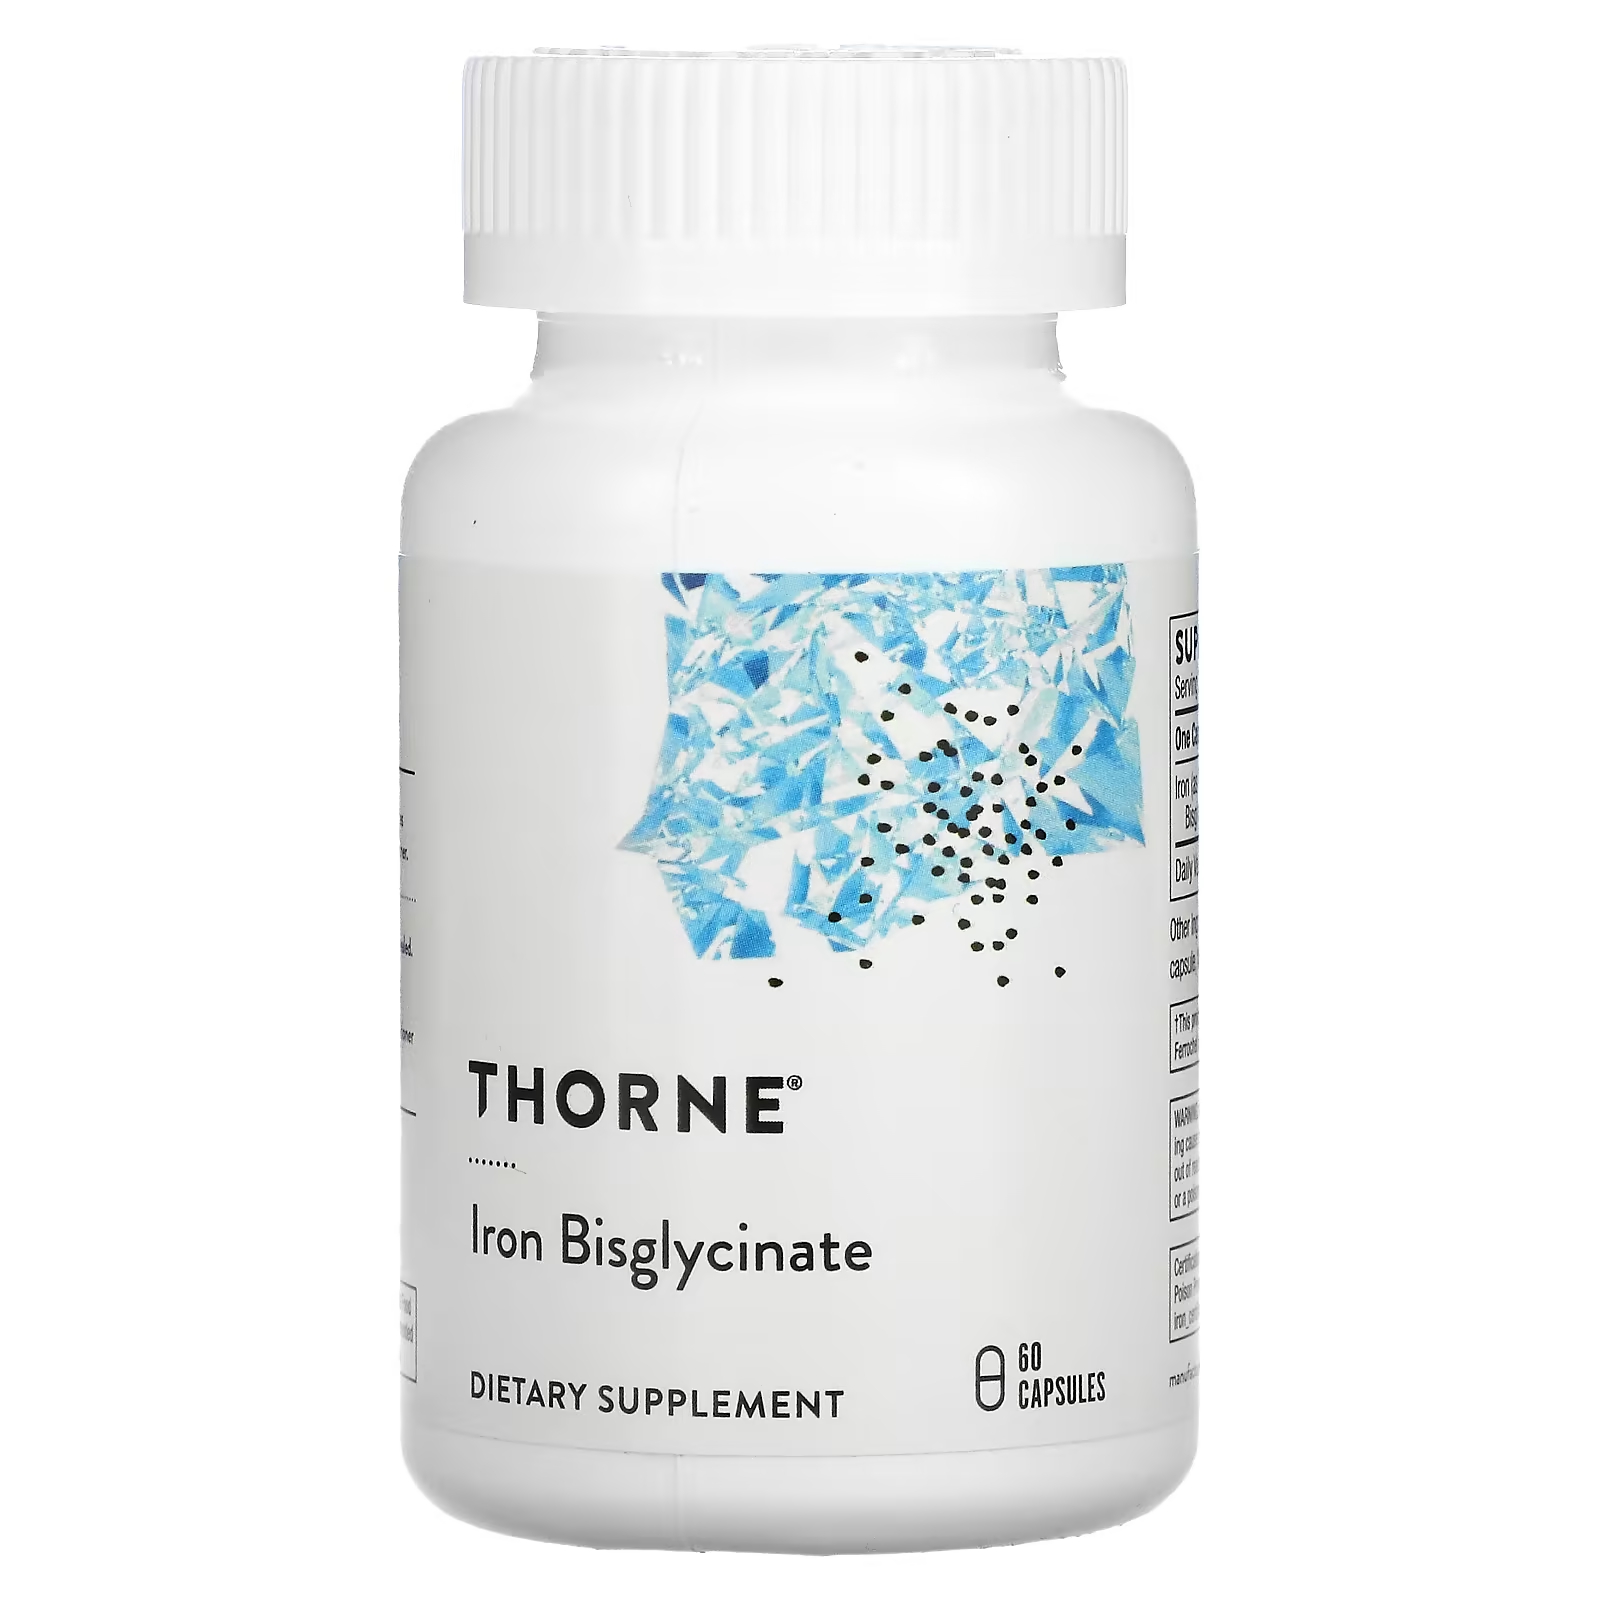 Thorne Бисглицинат железа 60 капсул thorne research бисглицинат железа 60 капсул